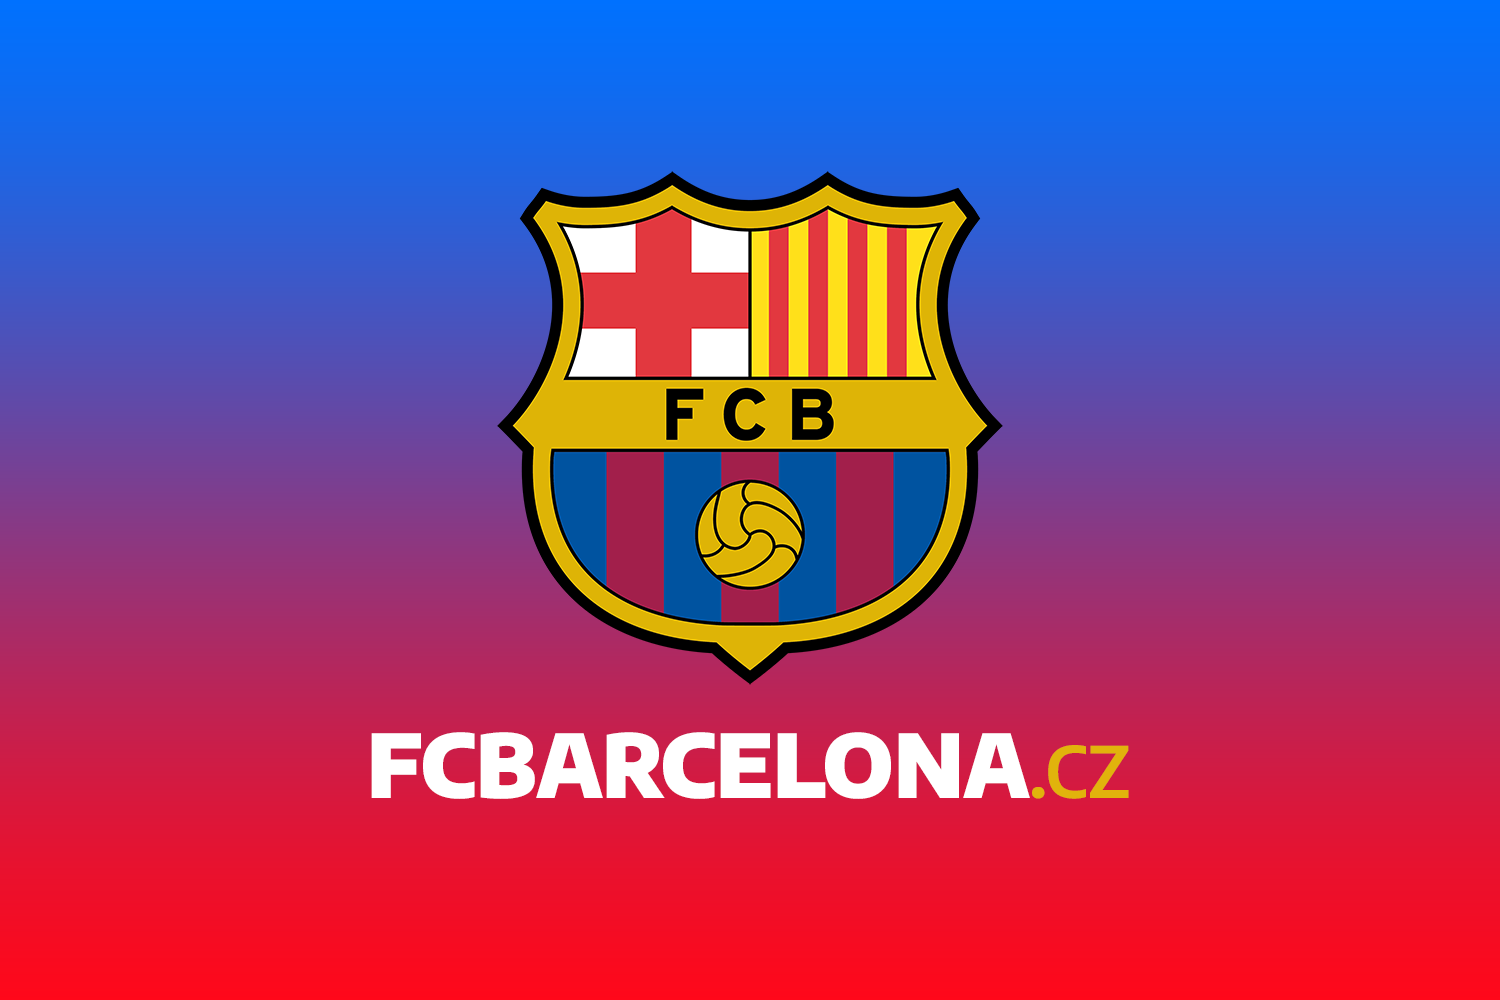 FC BARCELONA 4:2 SD EIBAR